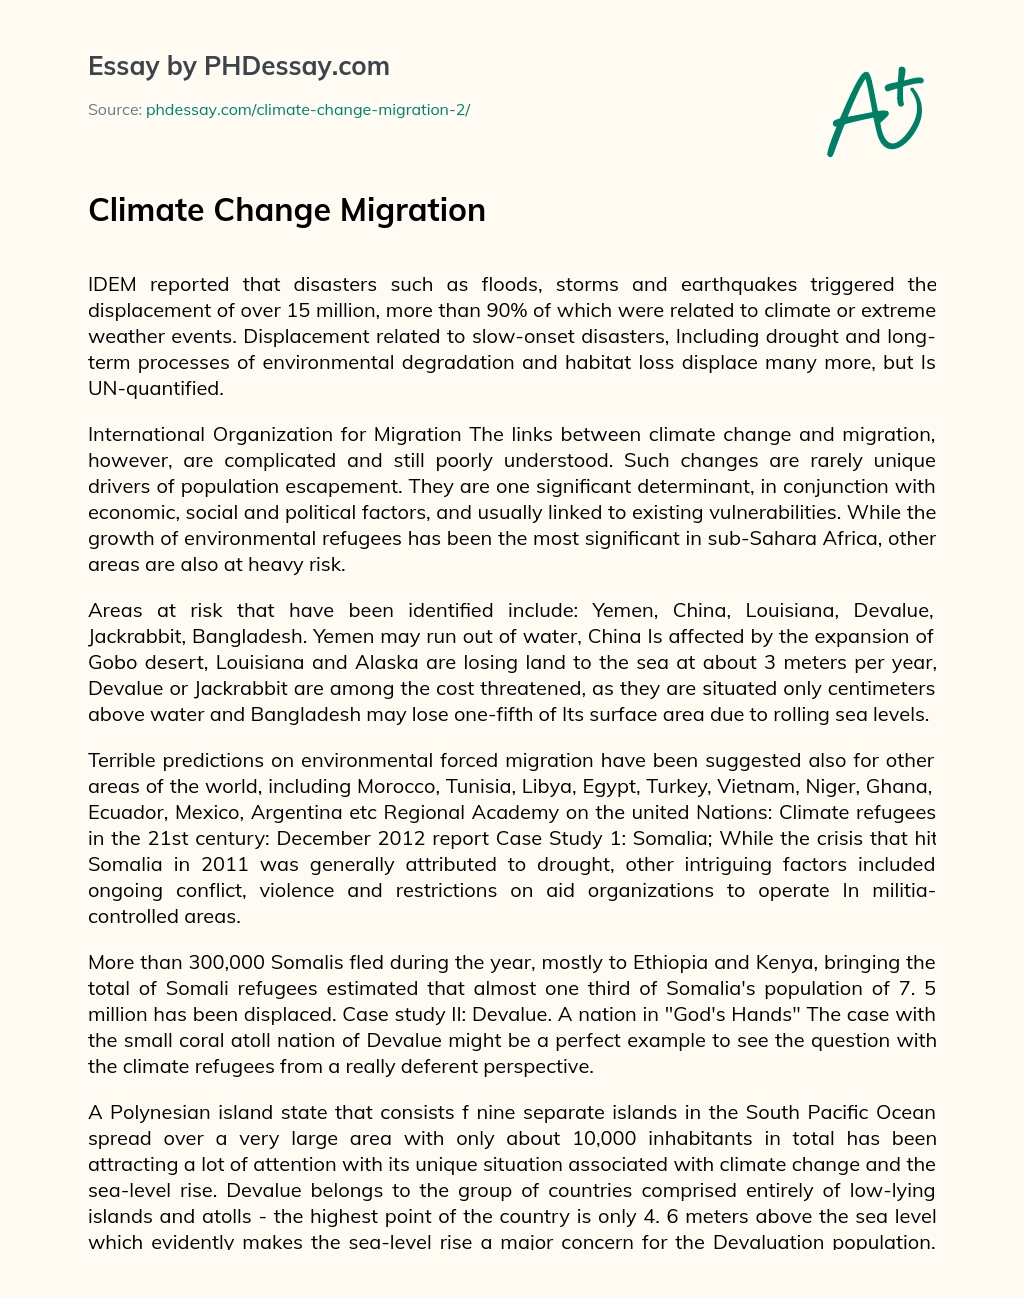 Climate Change Migration essay